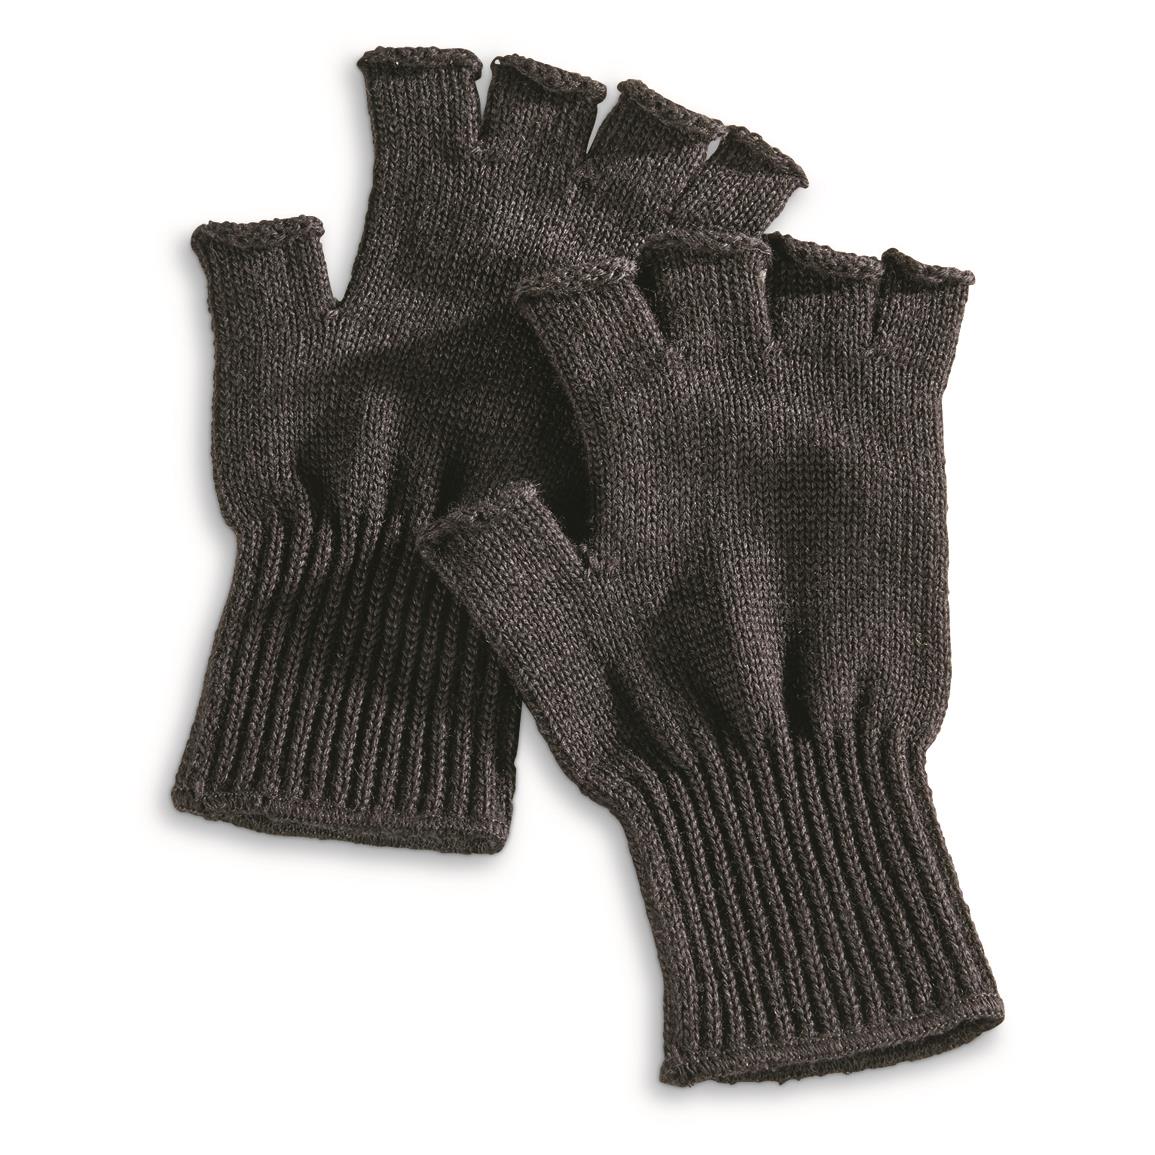 Genuine Issue Fingerless Glove Liner – McGuire Army Navy